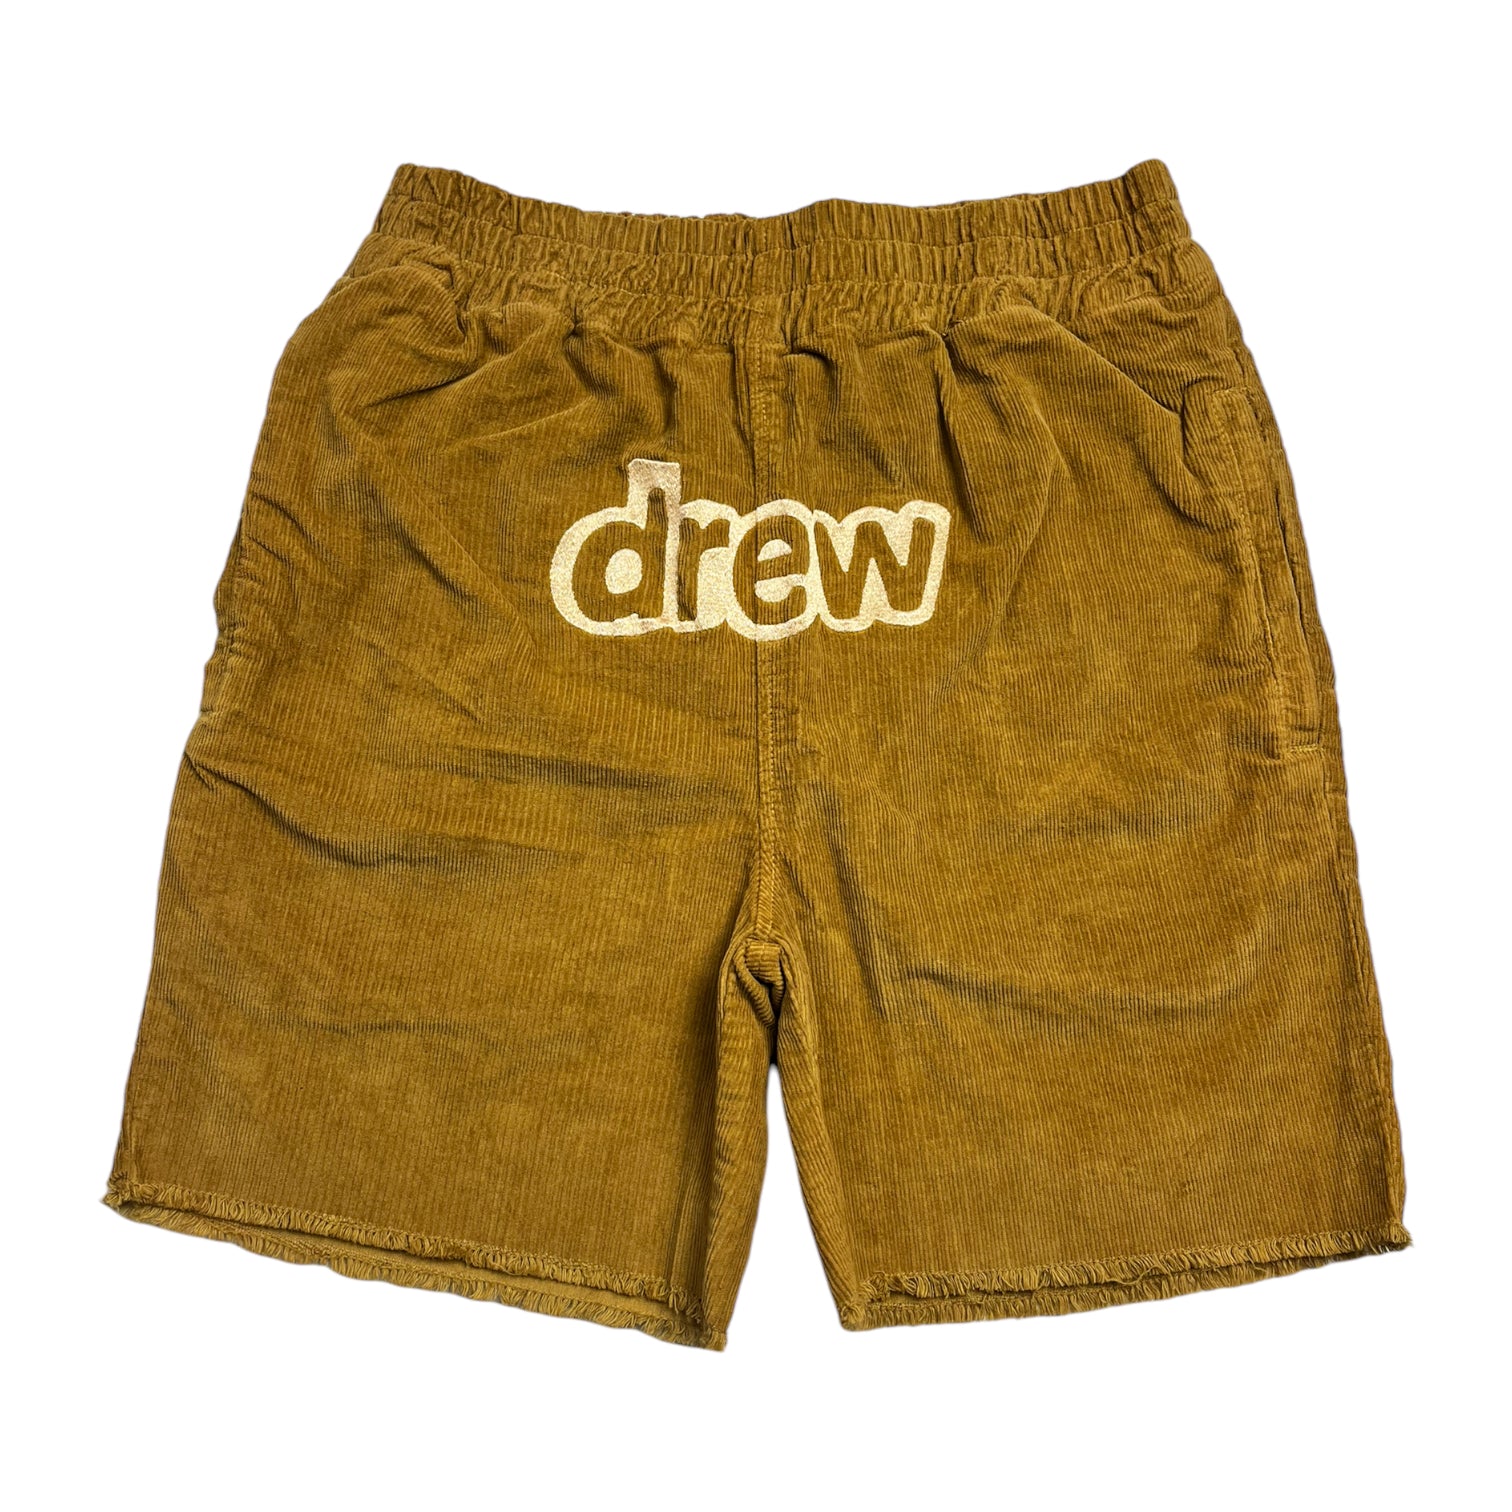 【人気店】Drew Corduroy Shorts - Camel ショートパンツ